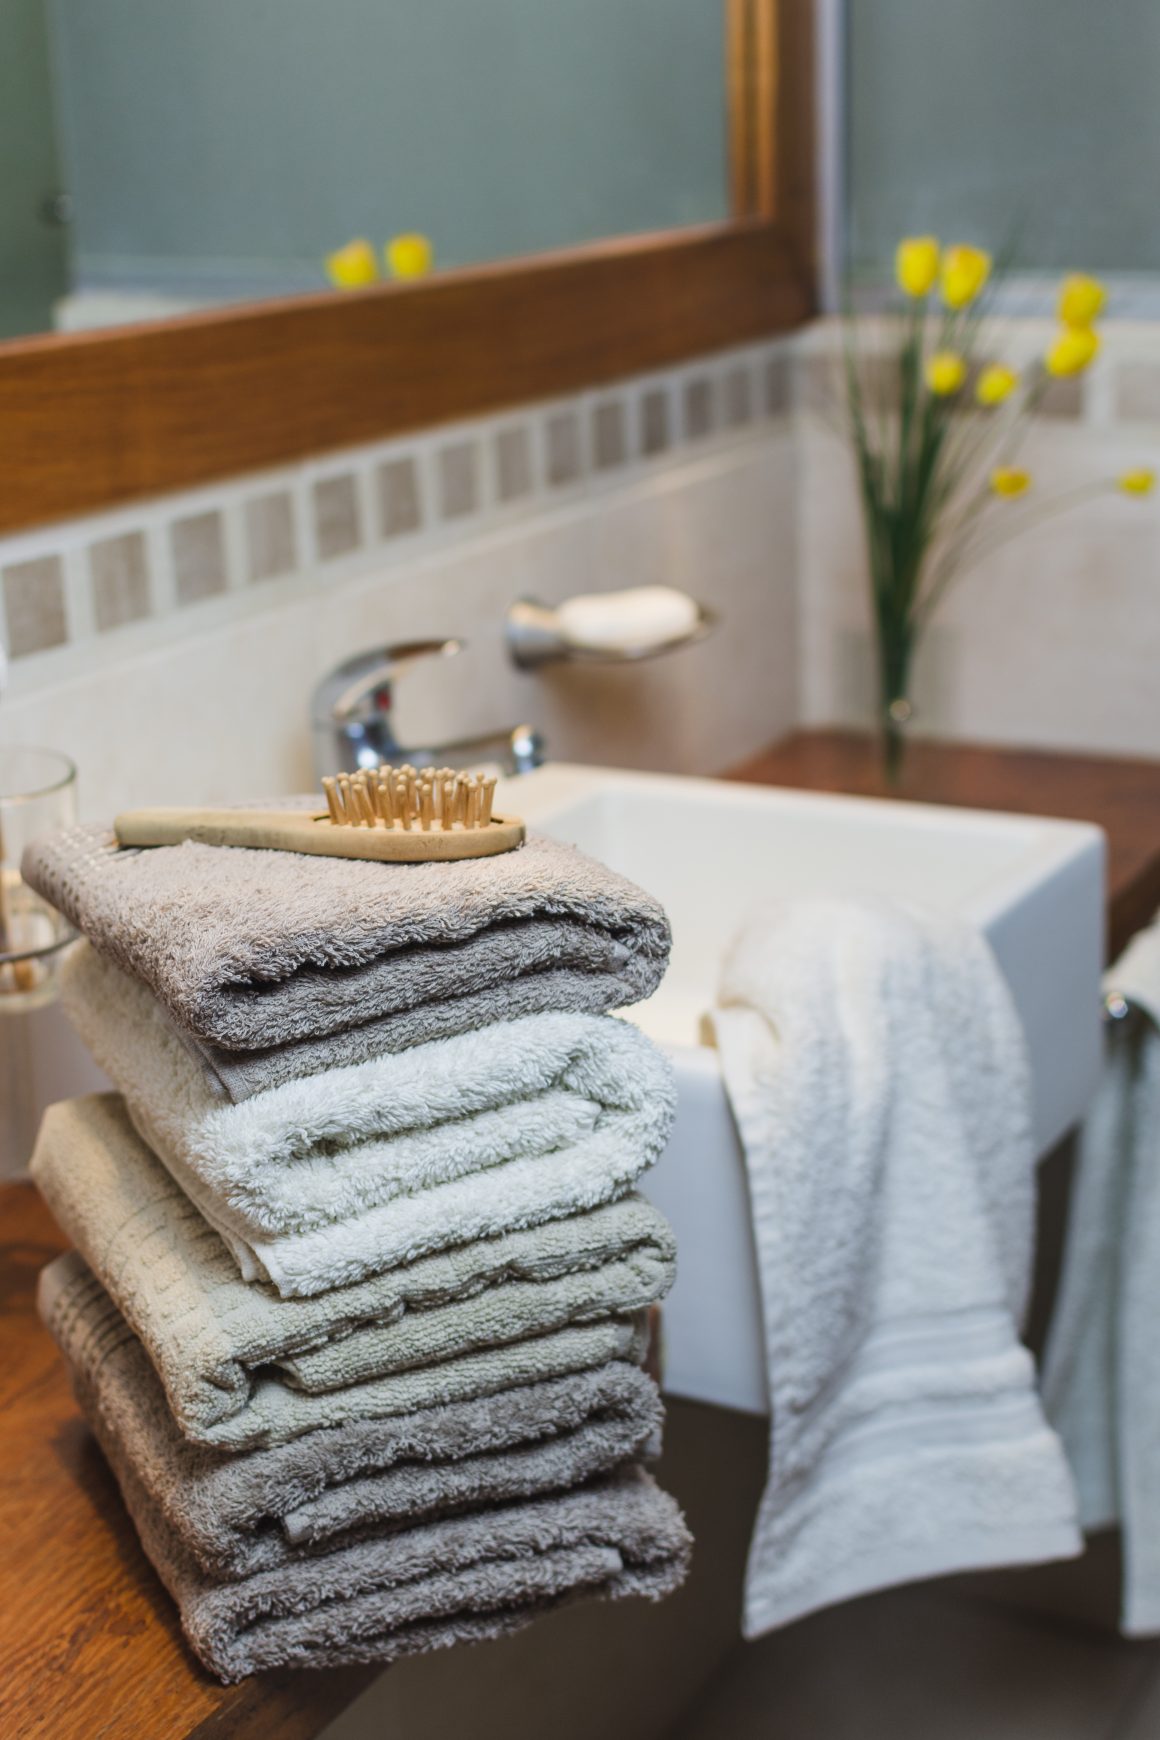 une salle de bains avec des serviettes beige et une brosse sur le lavabo, avec des fleurs jaunes en arrière-plan